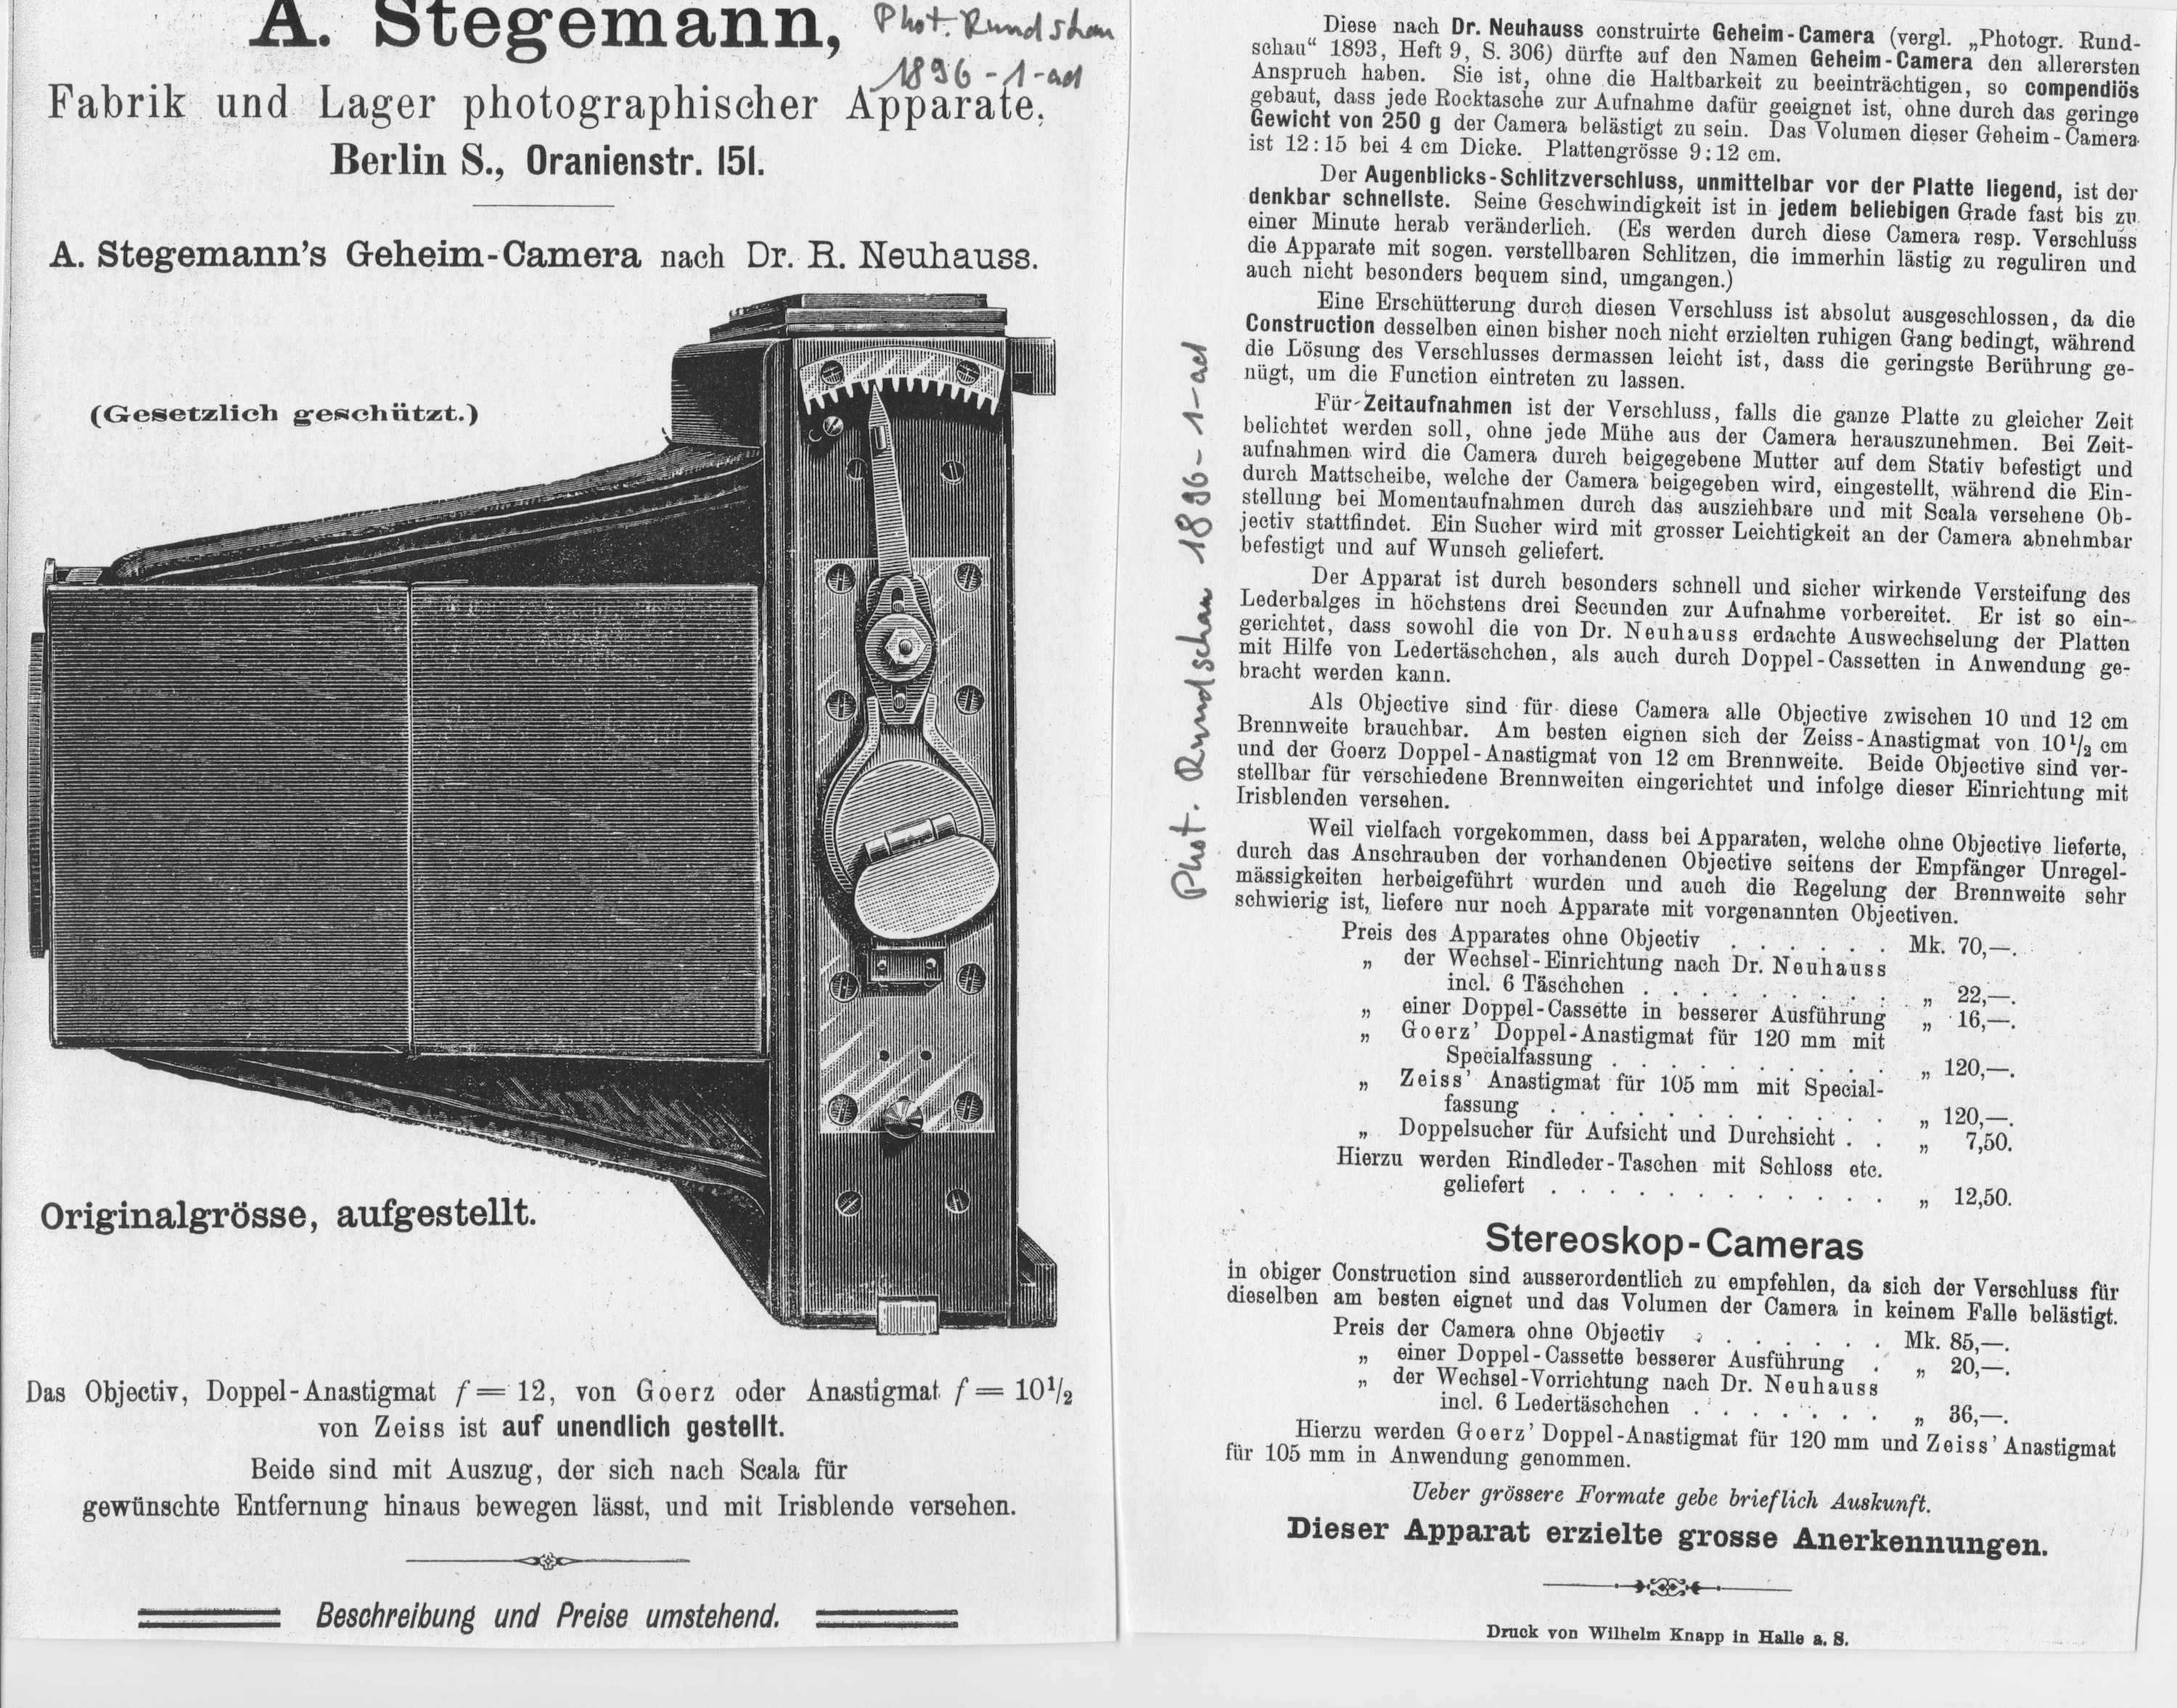 A. Stegemann's Geheim-Camera nach Dr. R. Neuhauss (1896), SO-1 (Club Daguerre e.V. RR-R)